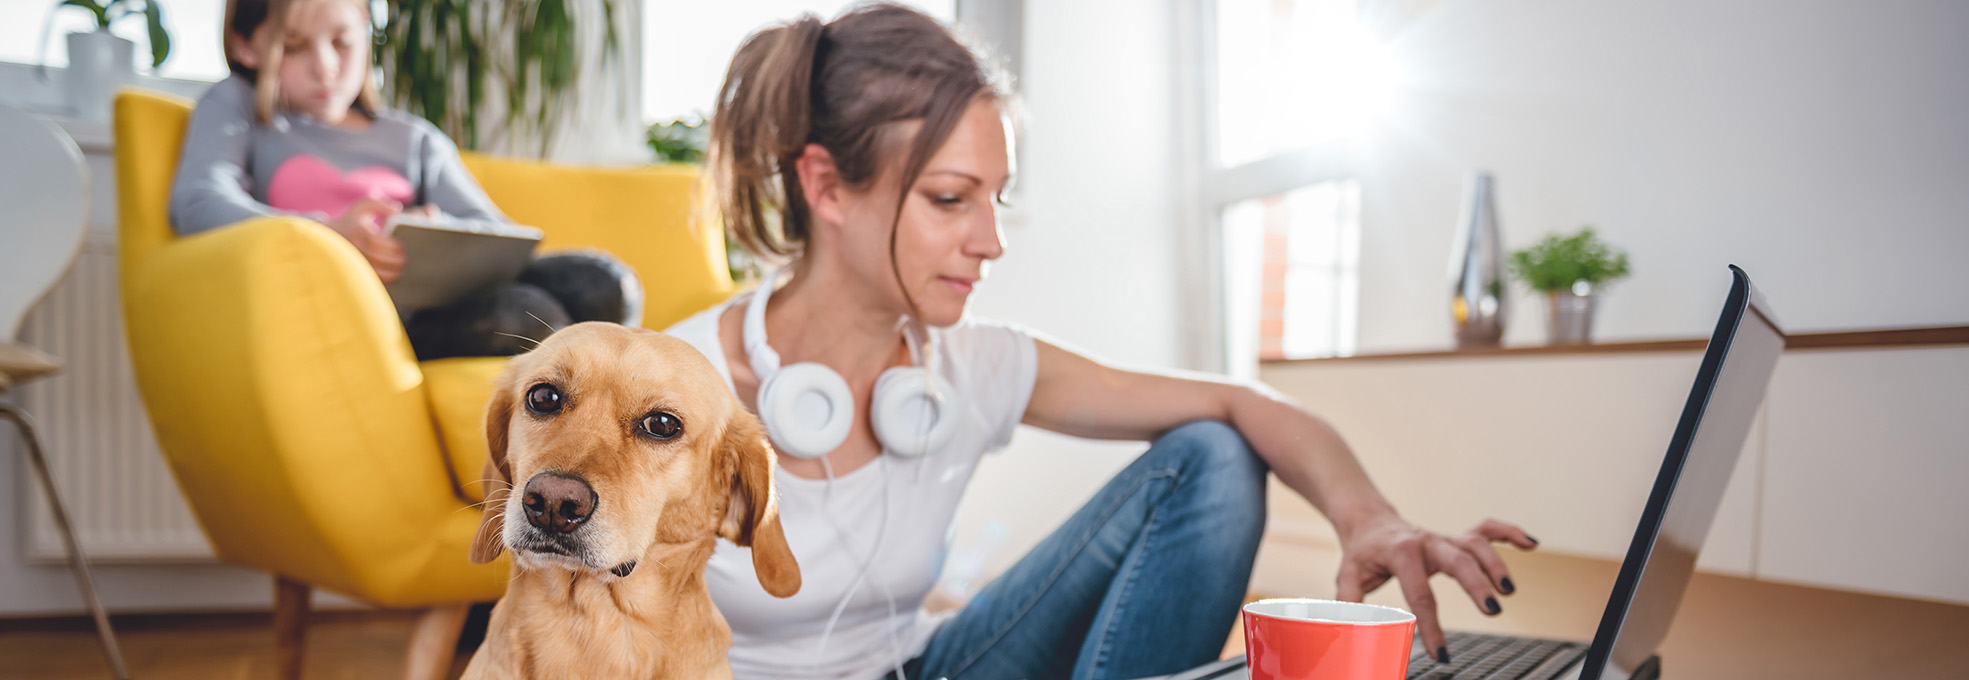 Frau mit Kopfhörern um den Hals arbeitet am Laptop. Im Vordergrund ein hellbrauner Hund. Im Hintergrund ein Mädchen auf einem Polstersessel, das ein Tablet bedient.